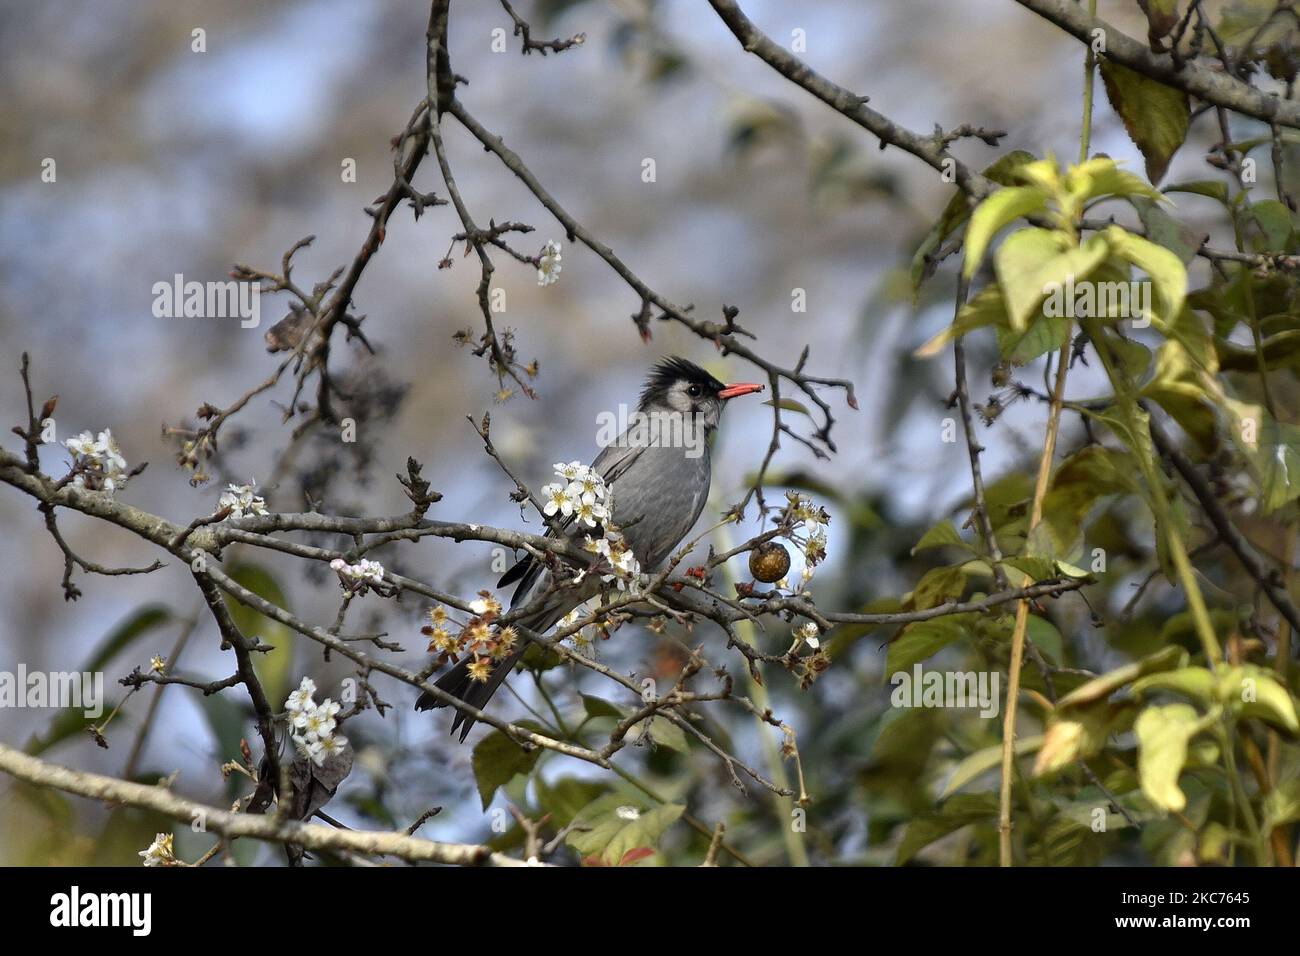 Black Bulbul am Samstag, 09. Januar 2020, im Baum am Taudaha Wetland Lake in Kirtipur, Kathmandu, Nepal gesehen. Taudaha ist einer der größten Rastplatz für die schönen bedrohten Zugvögel aus den südlichen Teilen Südostasiens sowie aus Afrika und Australien. Taudaha ist ein beliebtes Ziel für Vogelbeobachter und Verehrer. (Foto von Narayan Maharjan/NurPhoto) Stockfoto